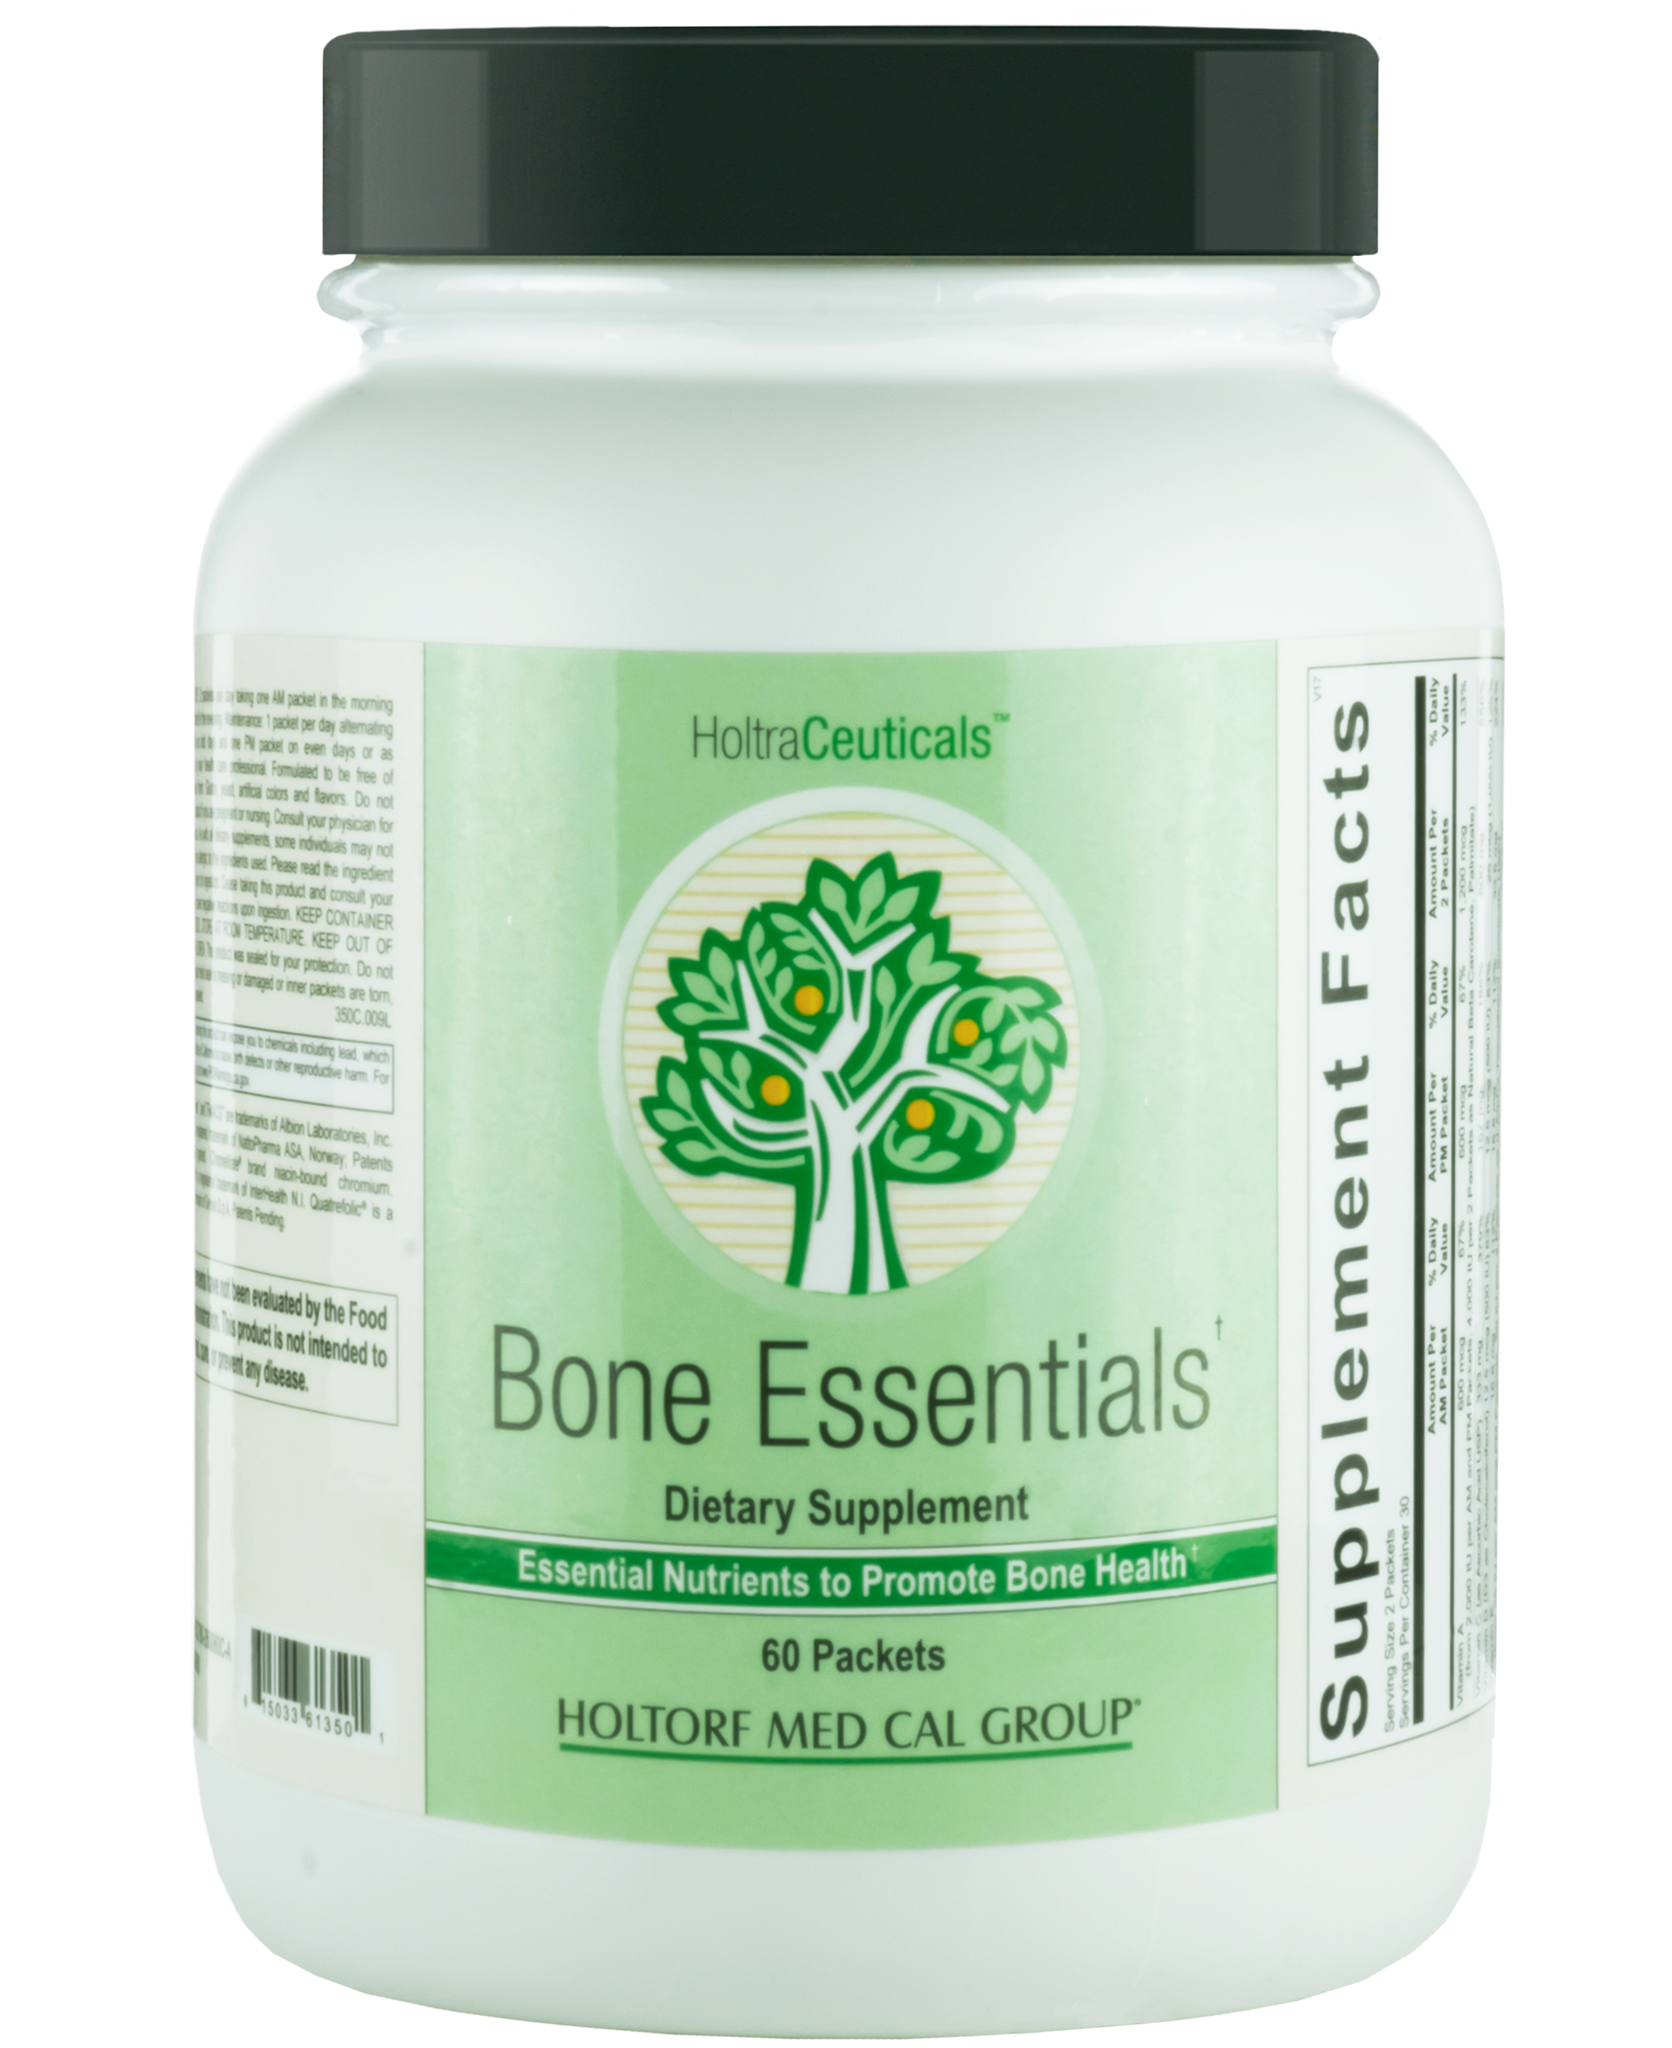 Bone Essentials